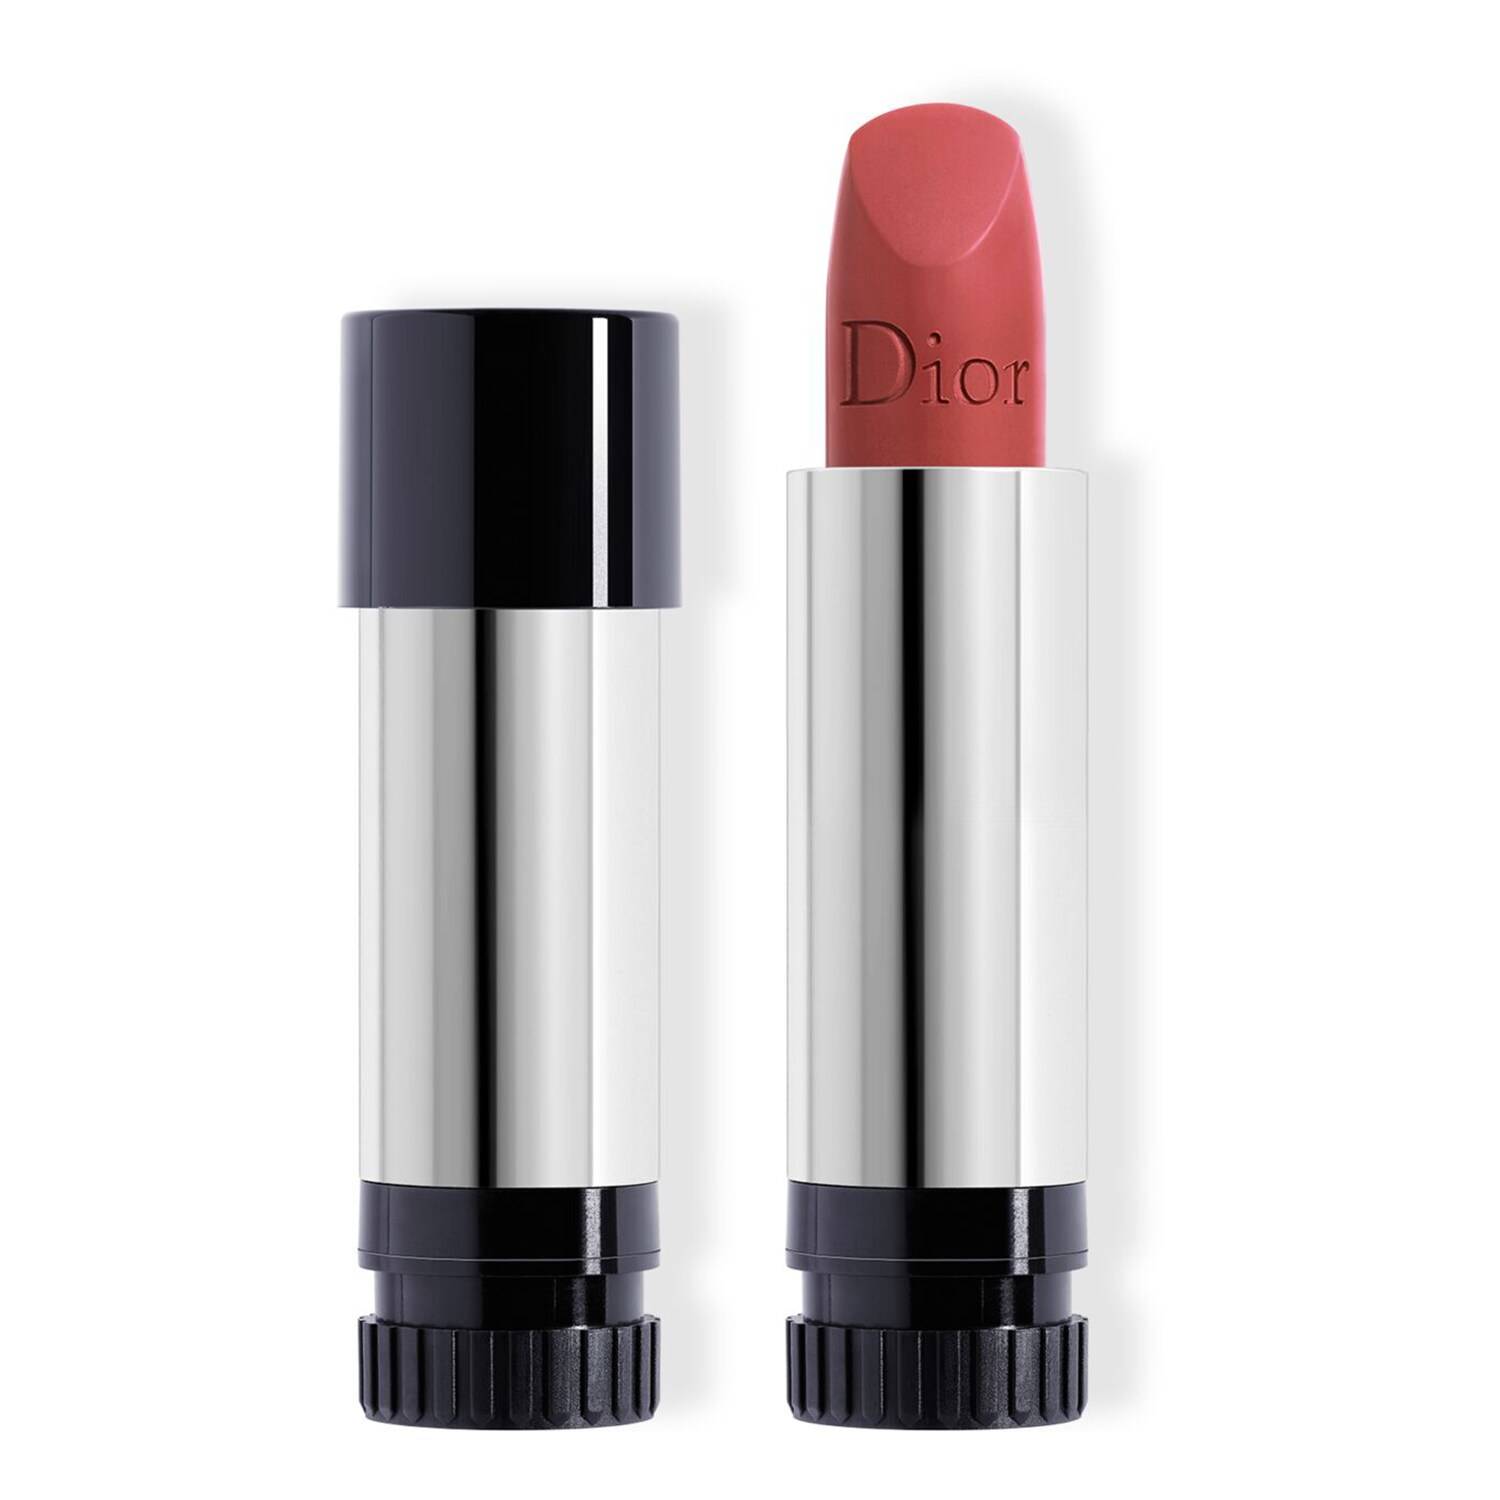 Dior Rouge Dior Couture Colour Lipstick Refill 720 Icone Matte Finish 3.5G